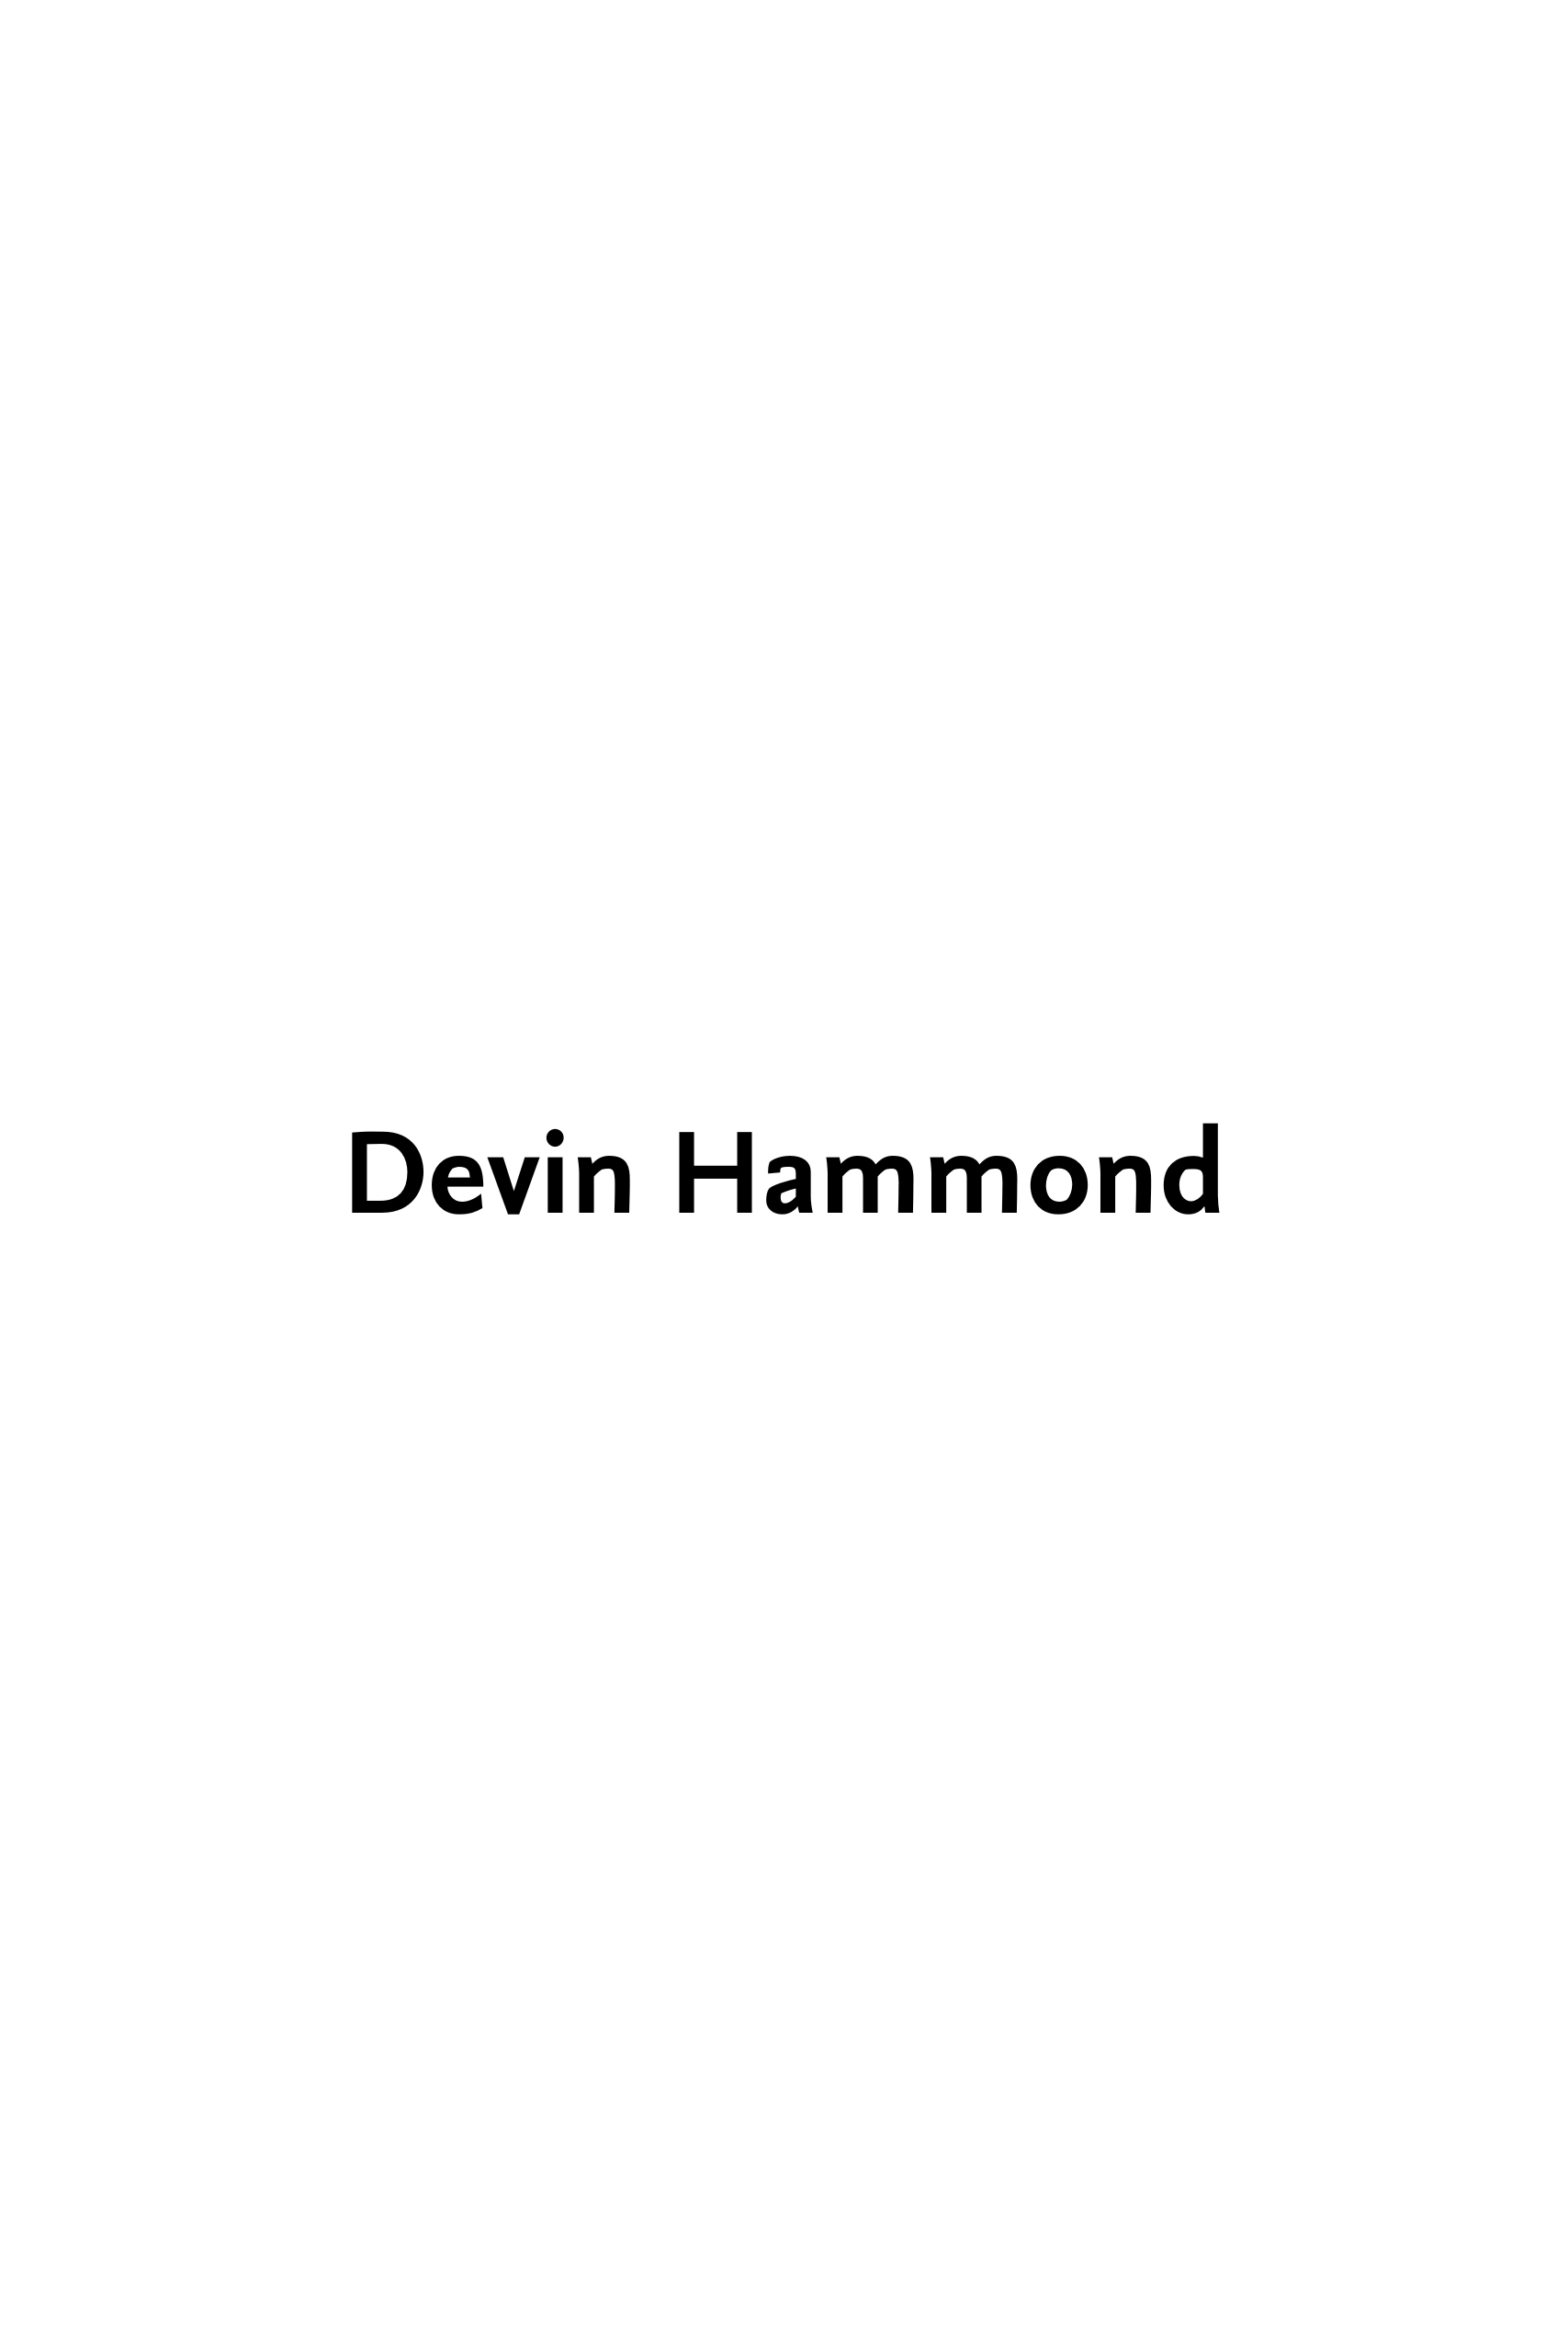 DEVIN HAMMOND